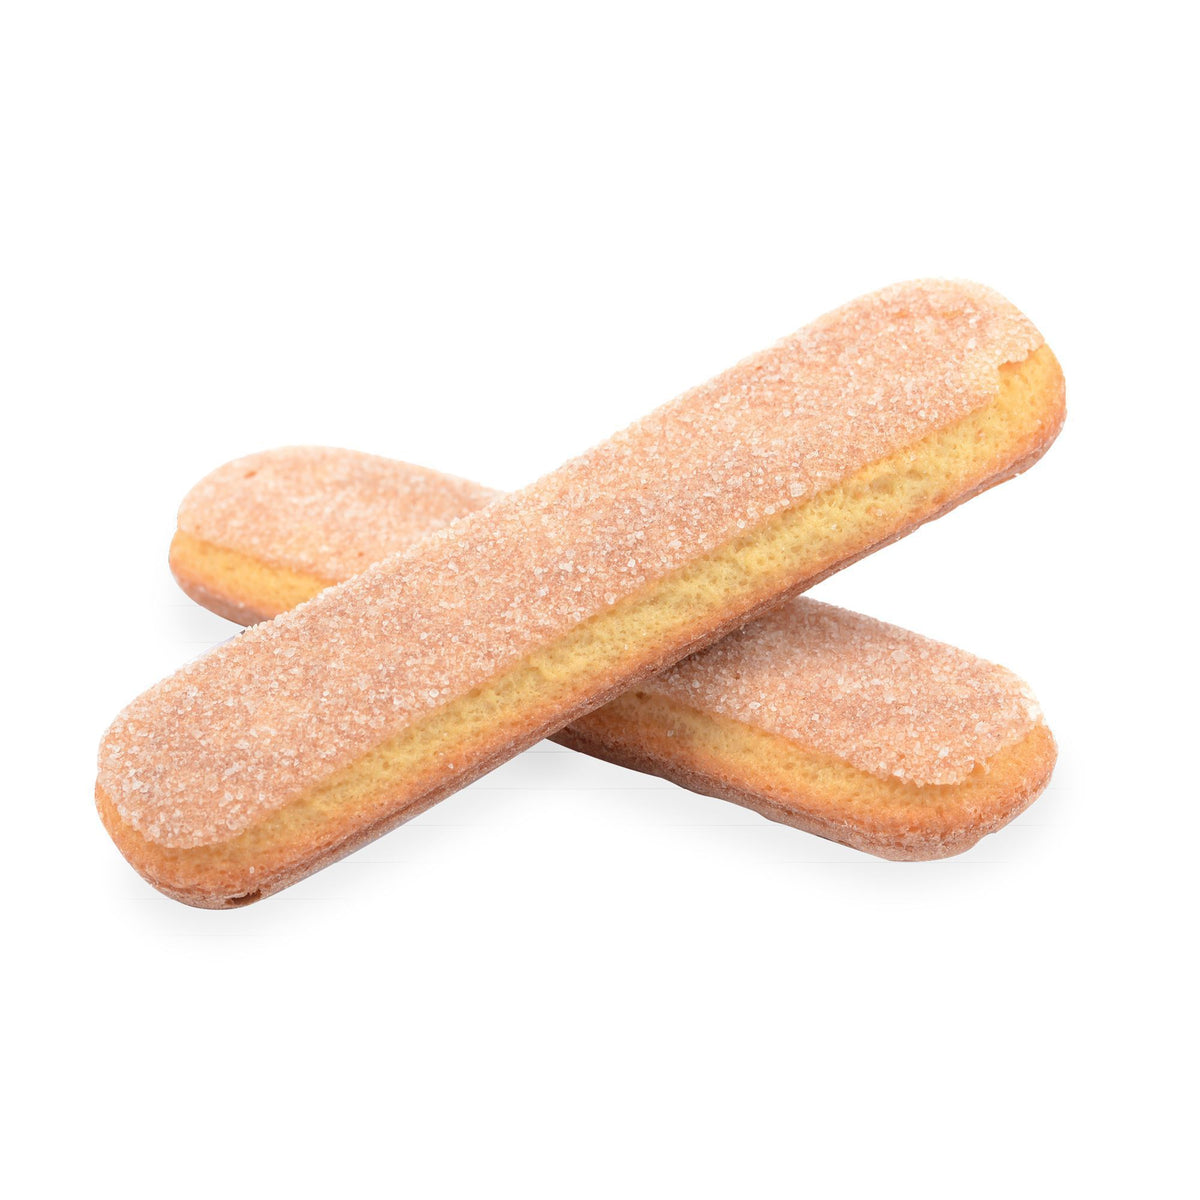 Buy Savoiardi - Lady Fingers 100gr Bag Online - Cookies ...